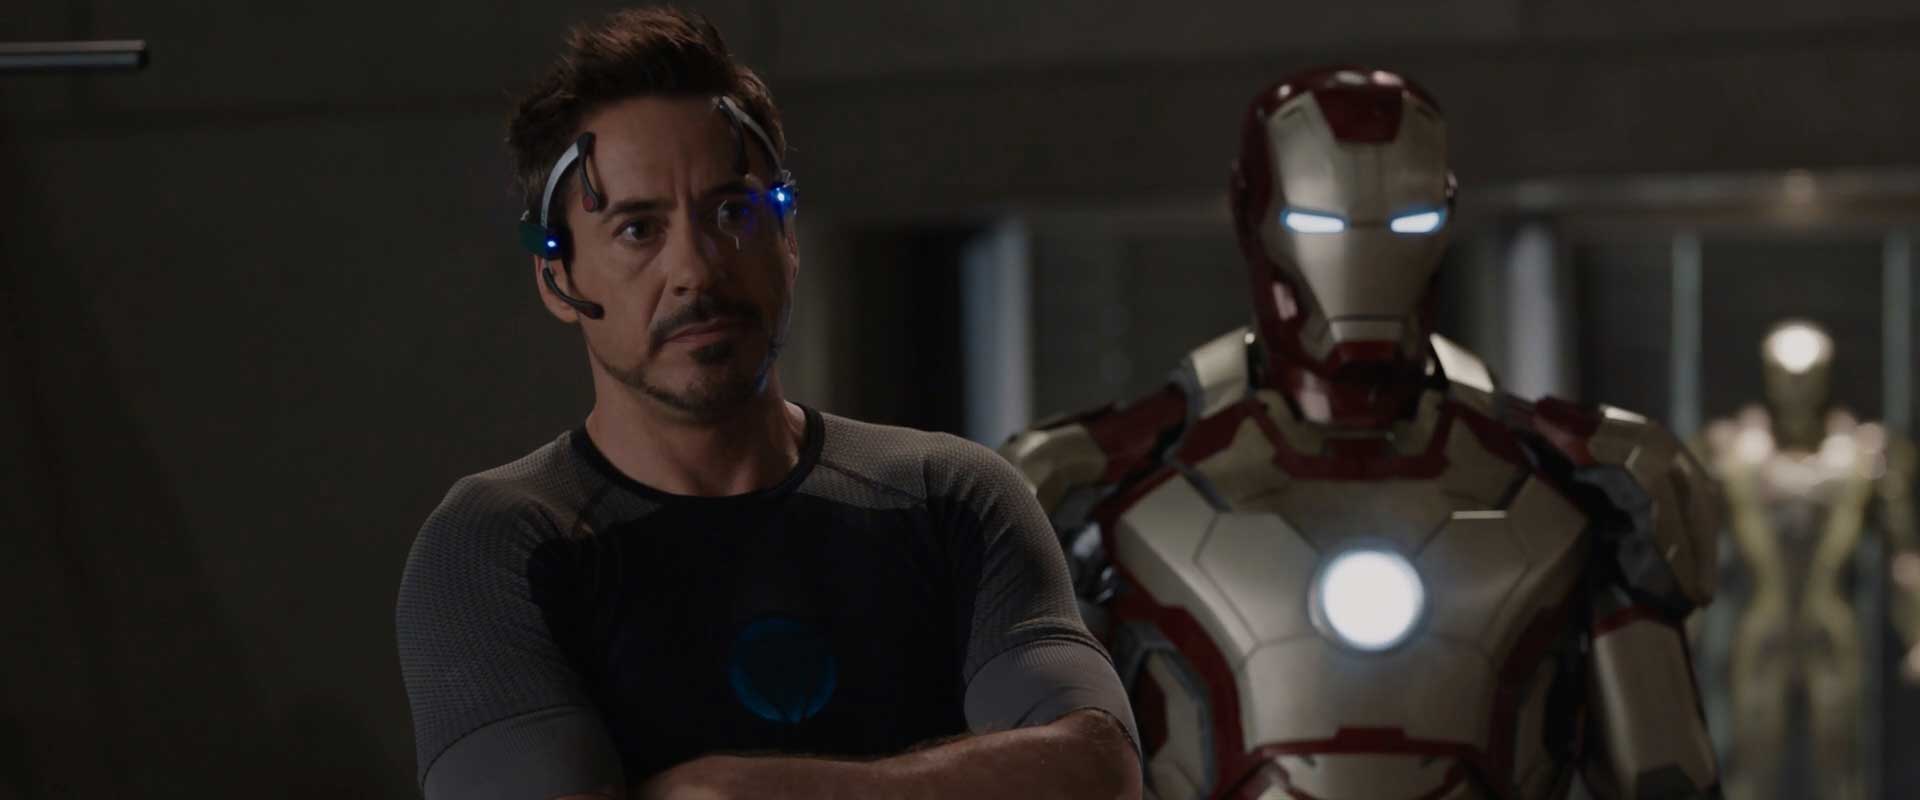 The Road To Avengers Endgame Iron Man 3